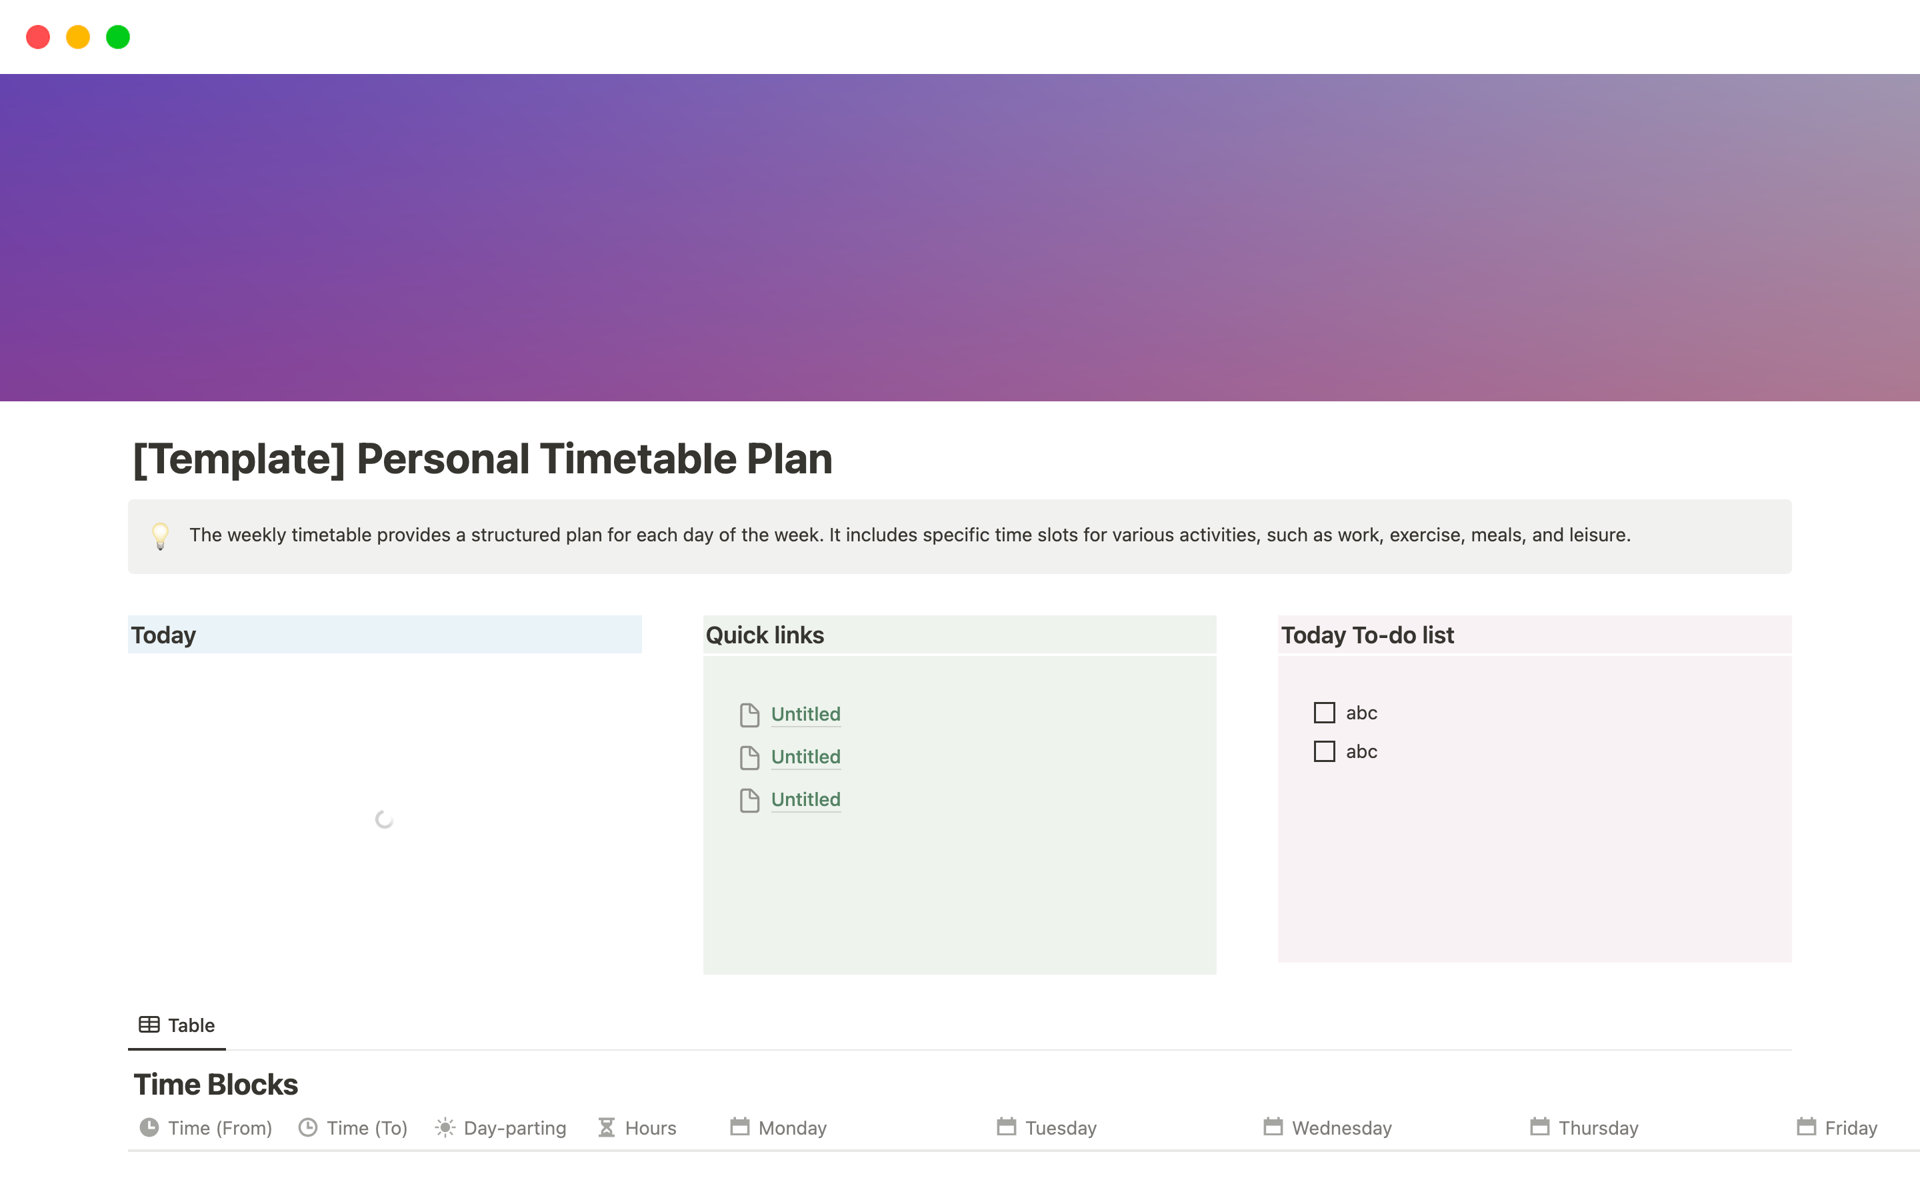 Uma prévia do modelo para Personal Timetable Plan